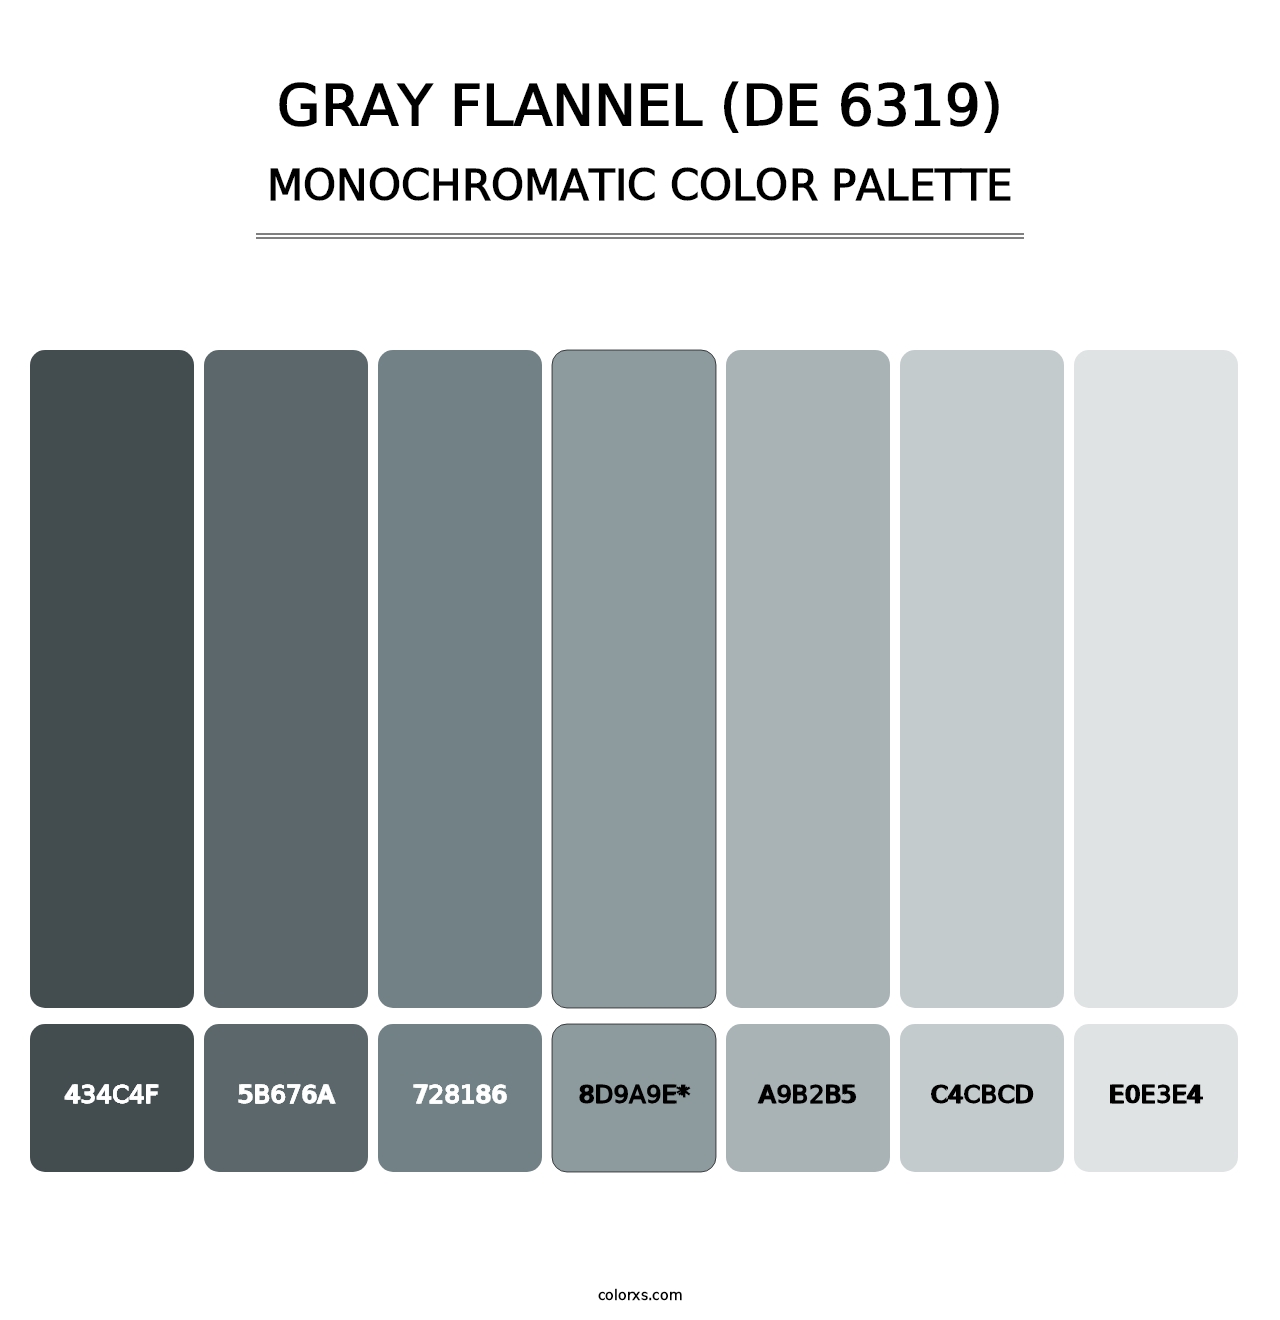 Gray Flannel (DE 6319) - Monochromatic Color Palette